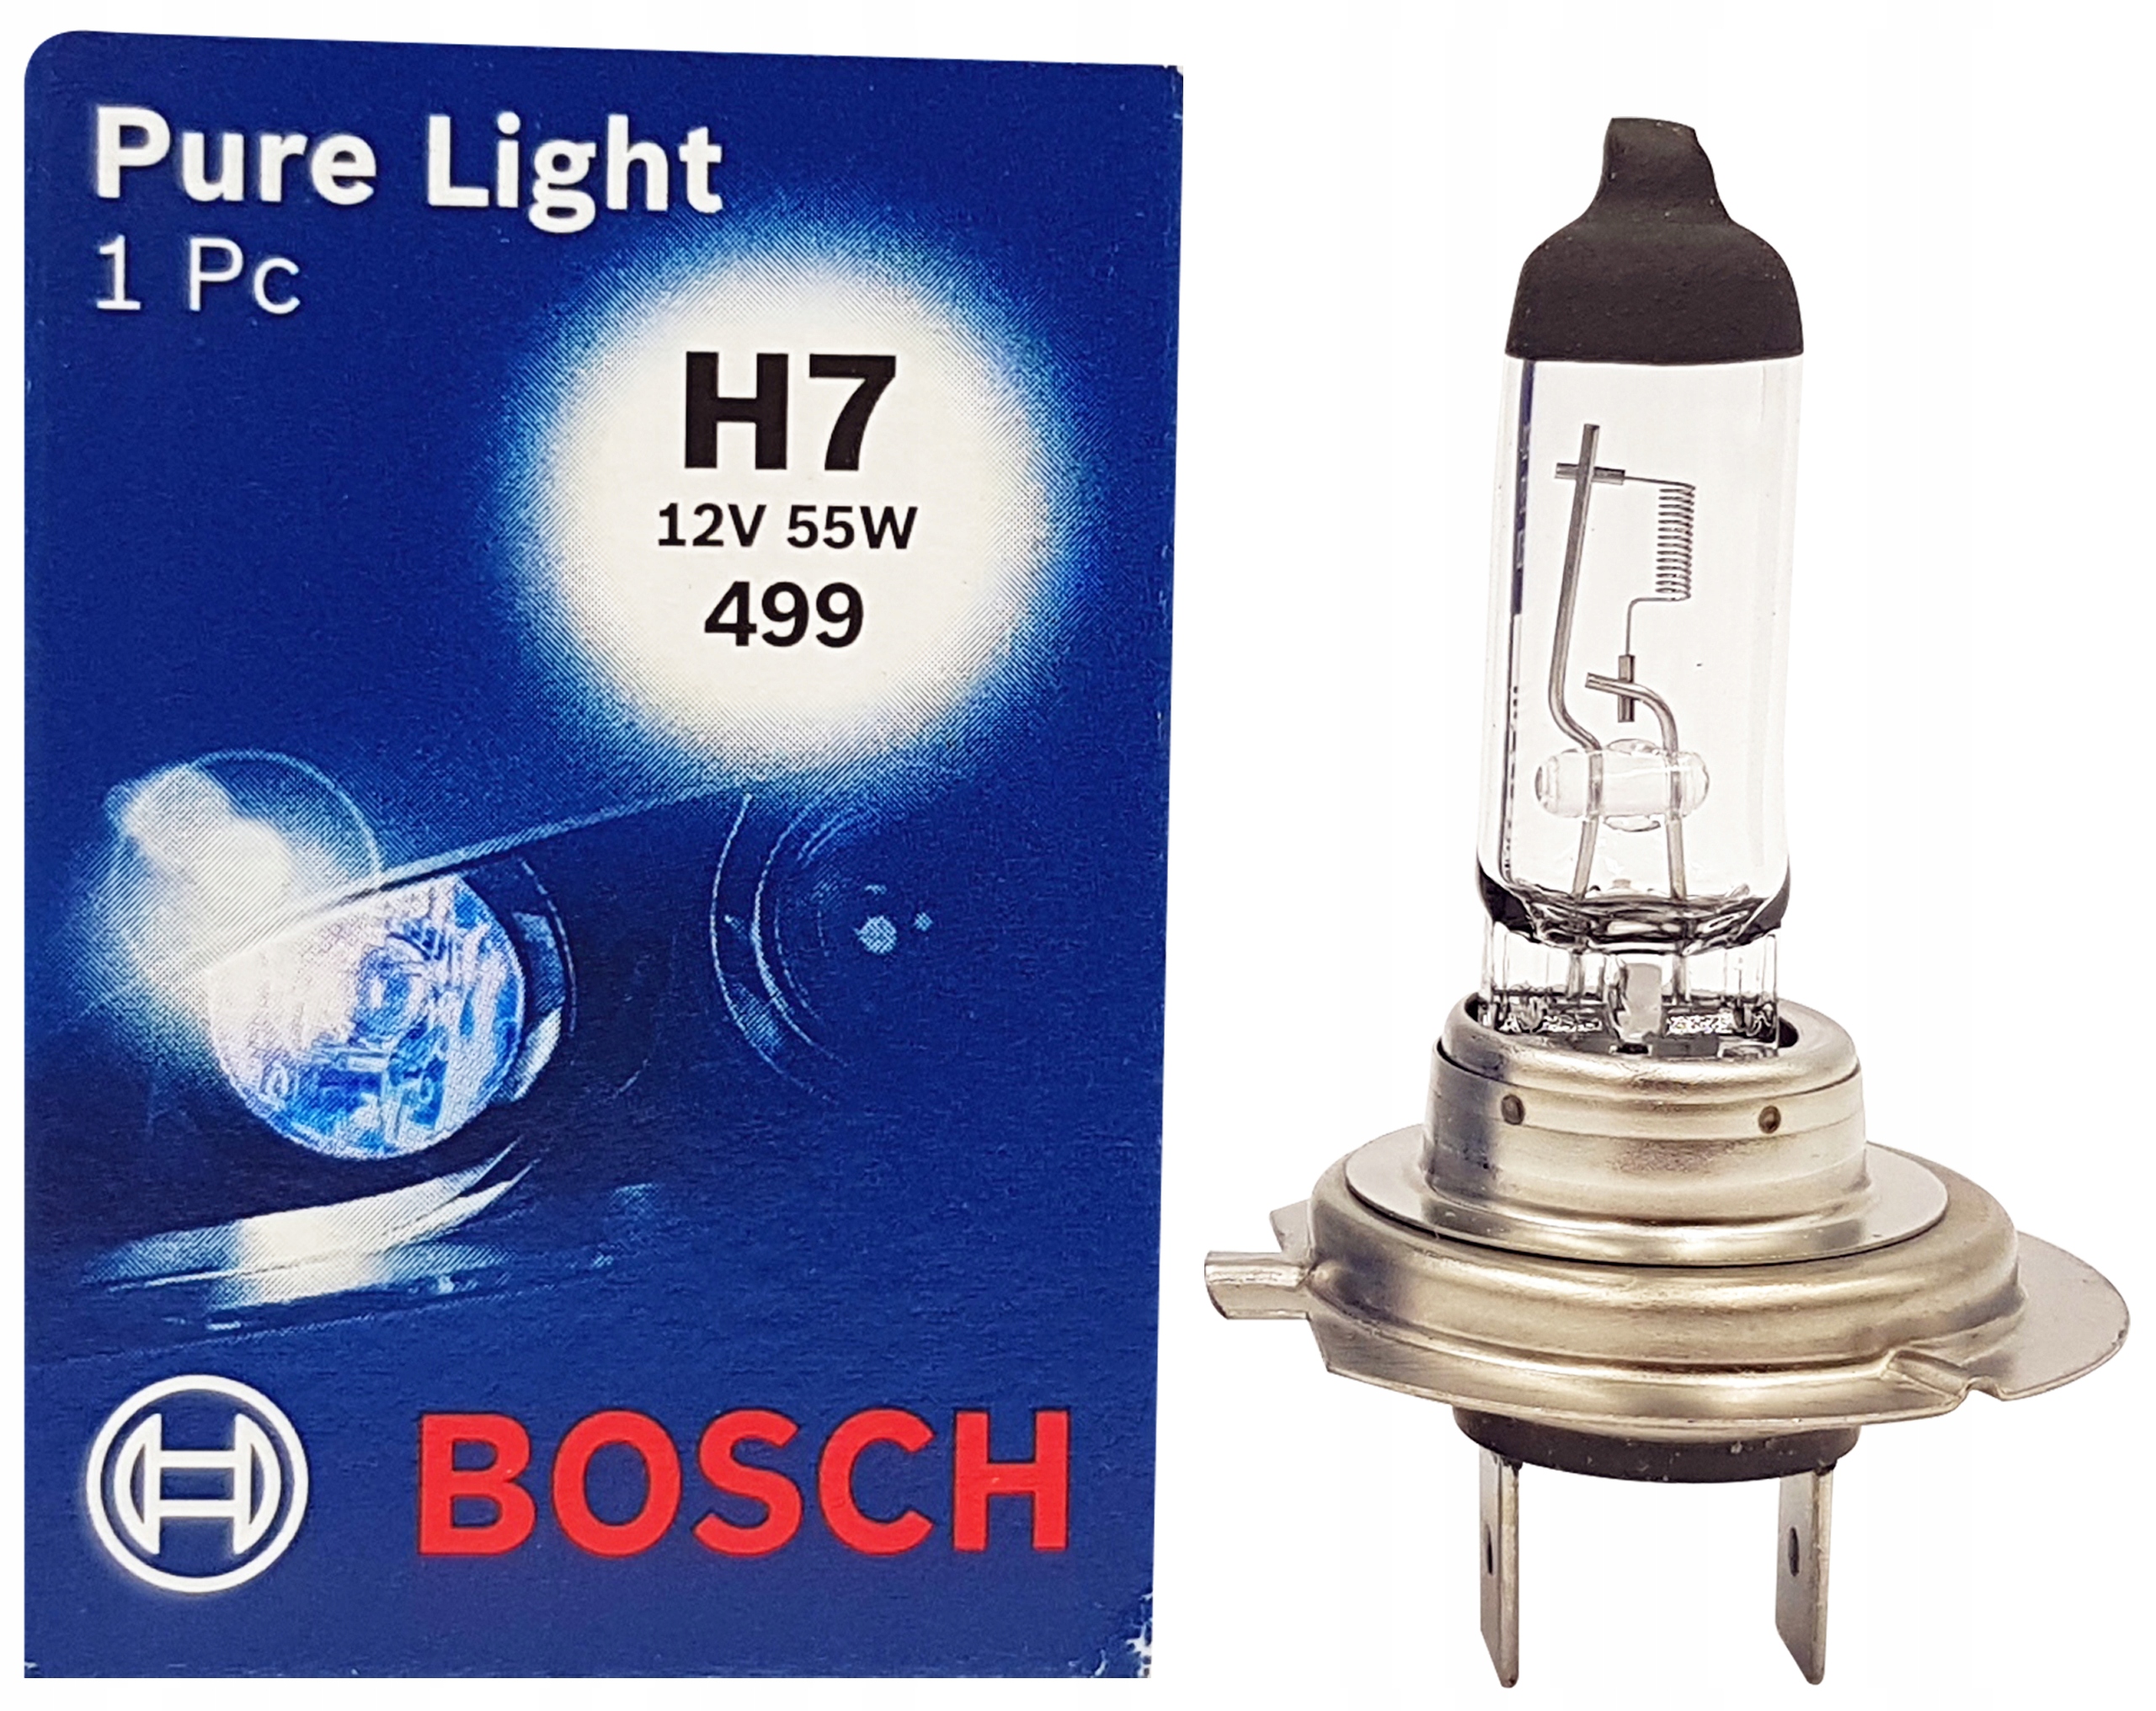 Bosch h7 12v 55w. Bosch Pure Light h7 12v 55w. 1987302071 Bosch. Bosch 1987302071 лампа h7 12/55w "Bosch" px26d Pure Light. Лампа h7 12v 55w Pure Light-Standart Bosch.